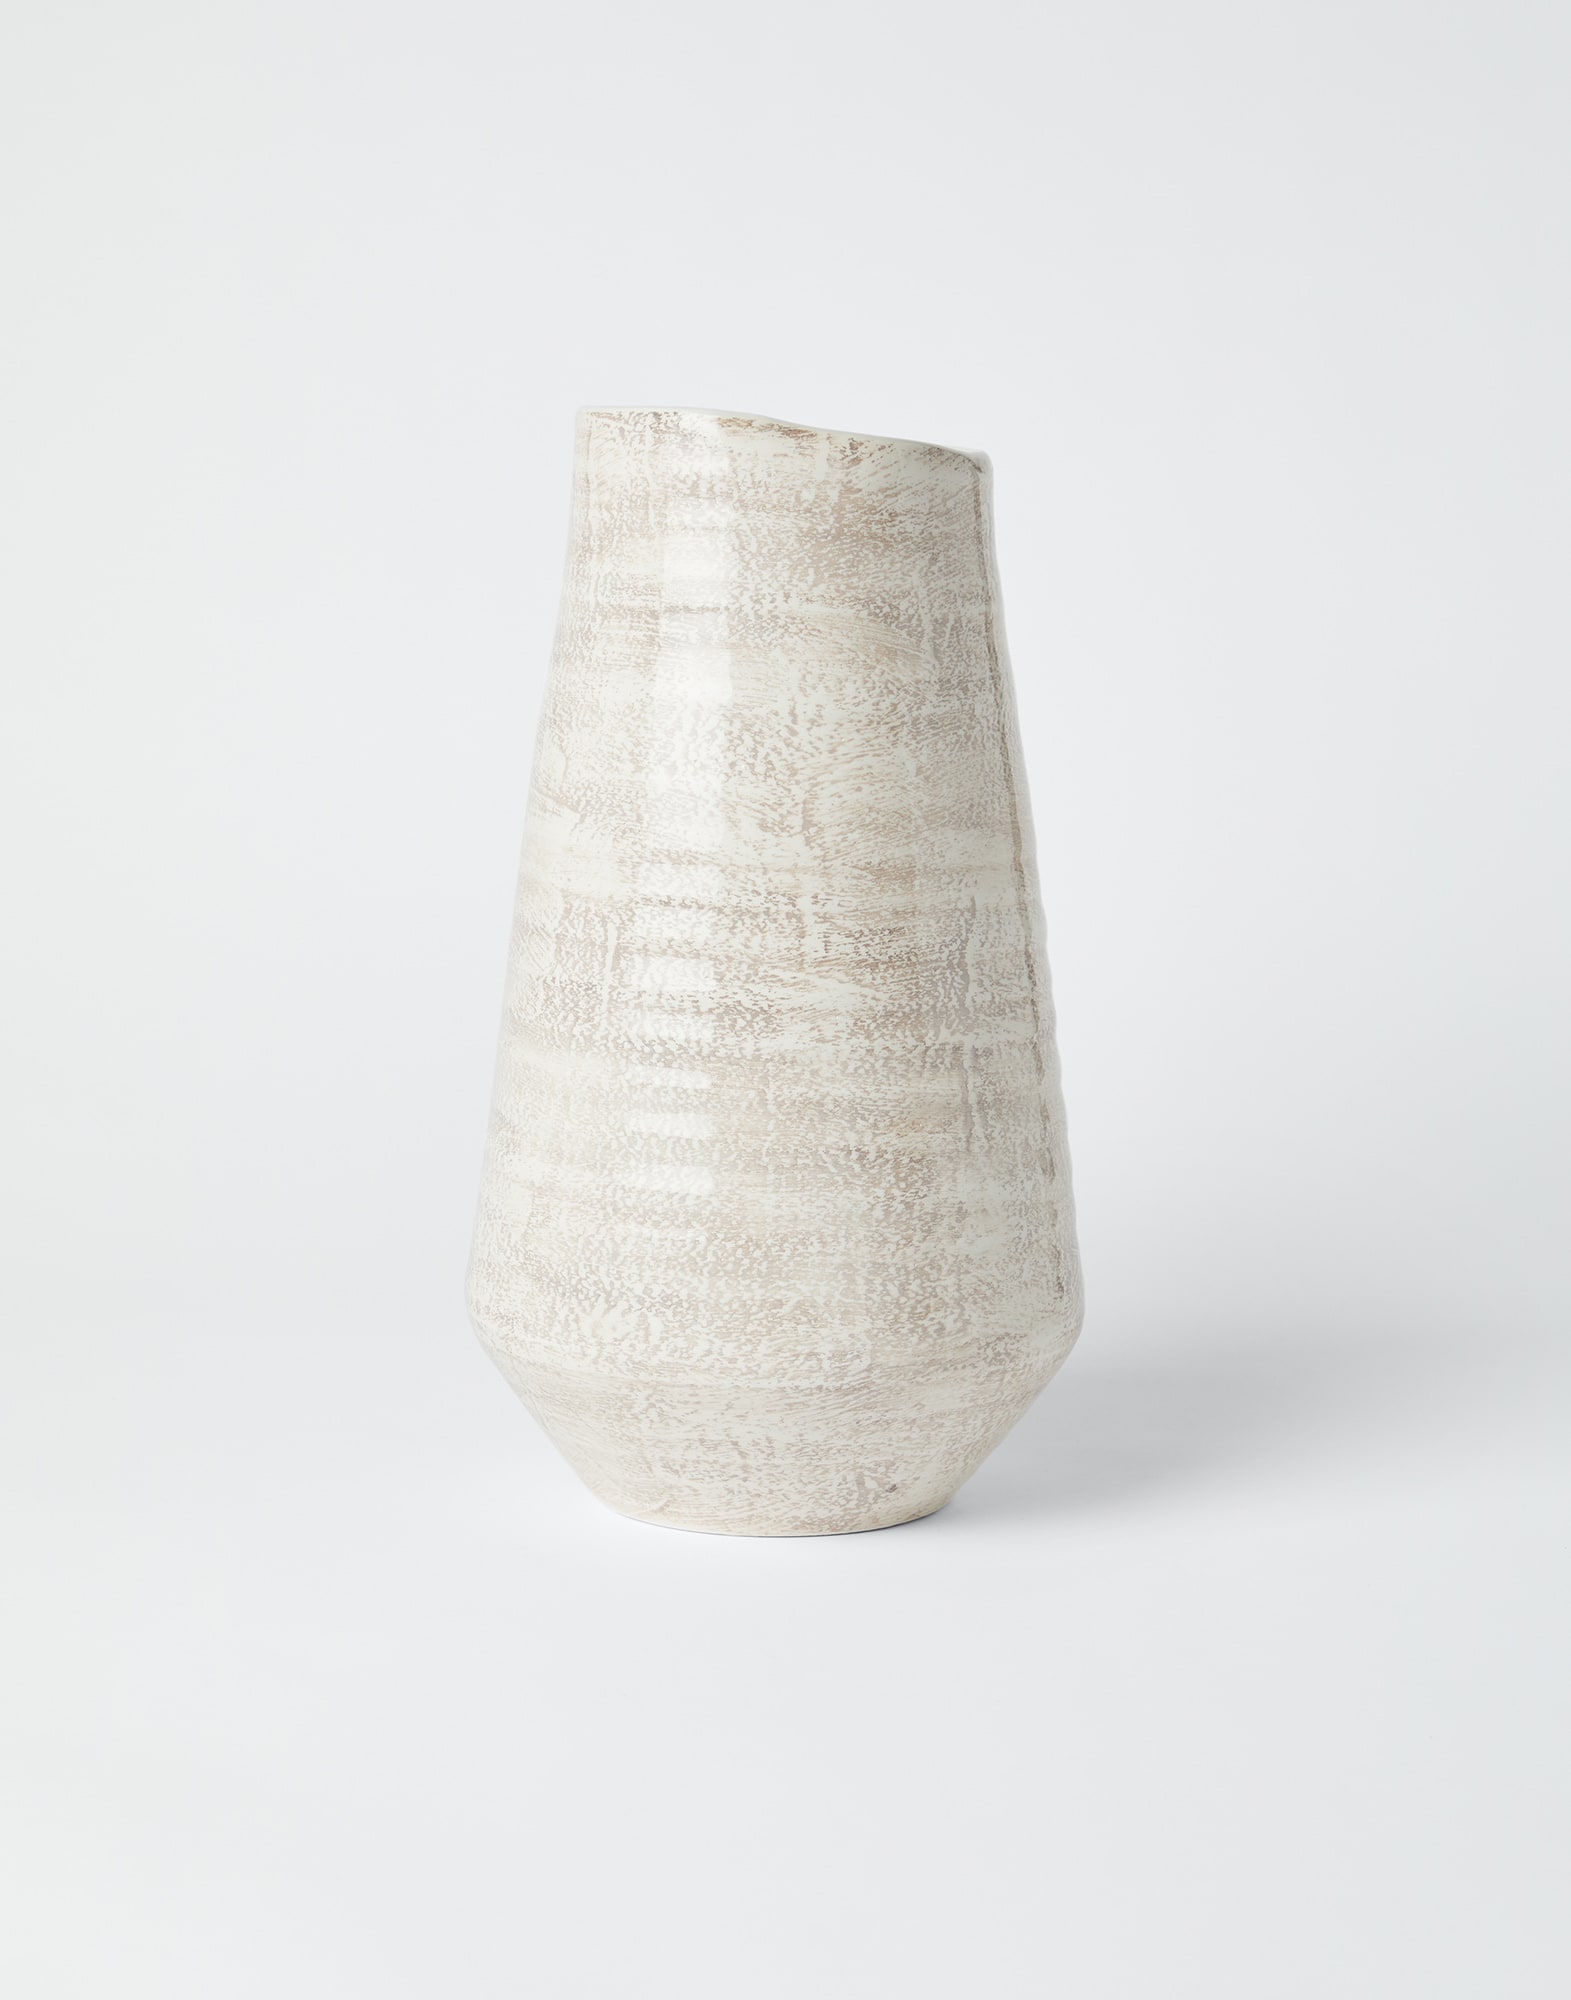 Maxi ceramic vase Lessivè Lifestyle - Brunello Cucinelli